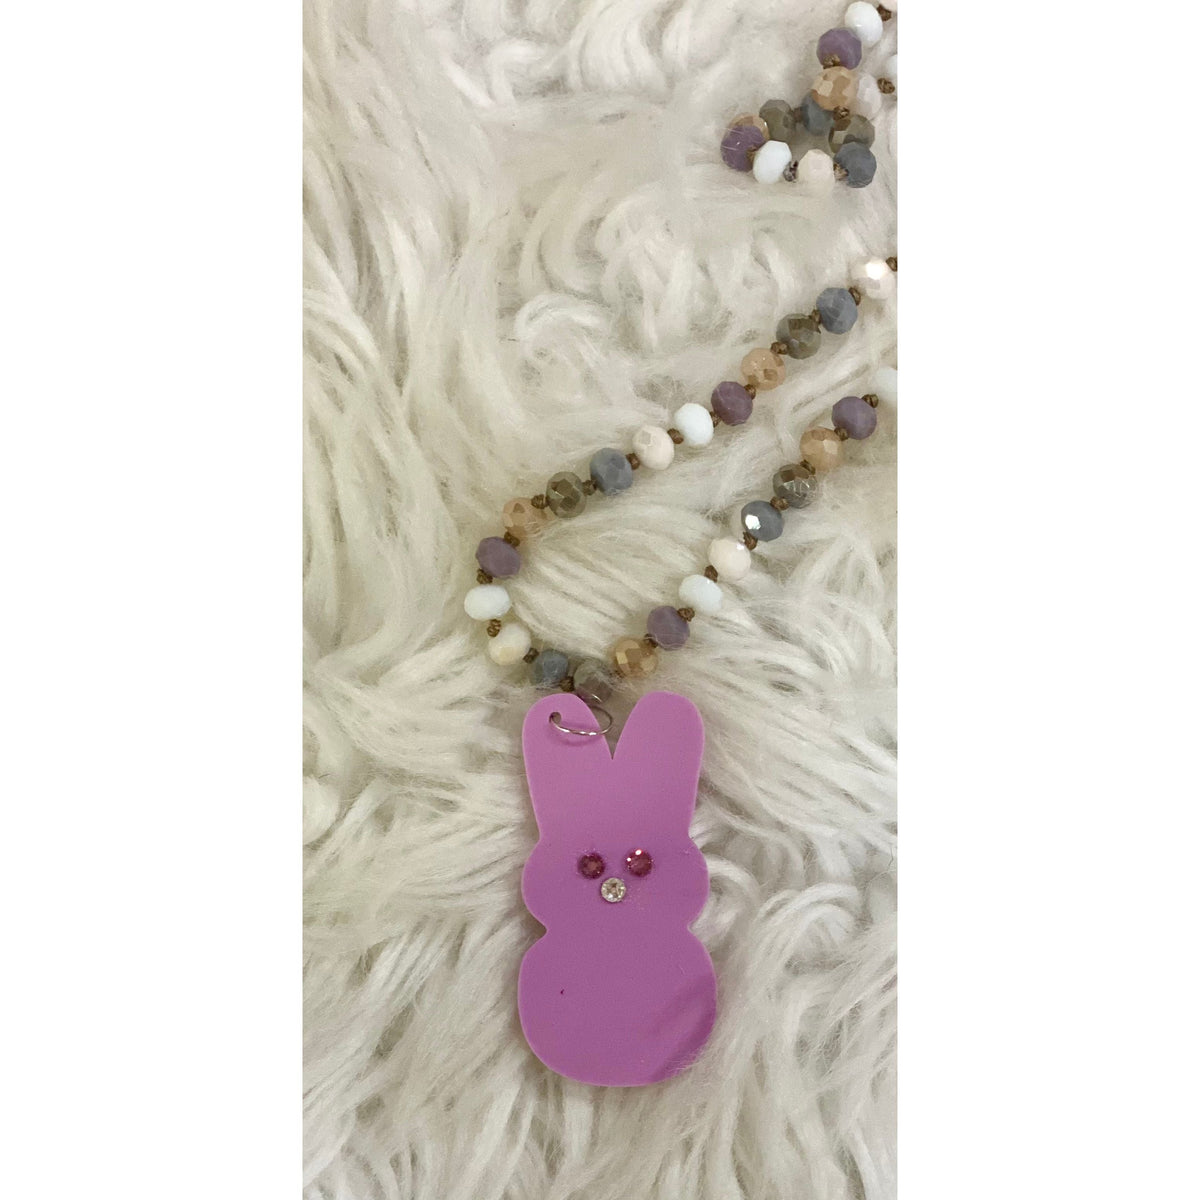 Peep Bunny Acrylic Pendant on Beaded Necklace